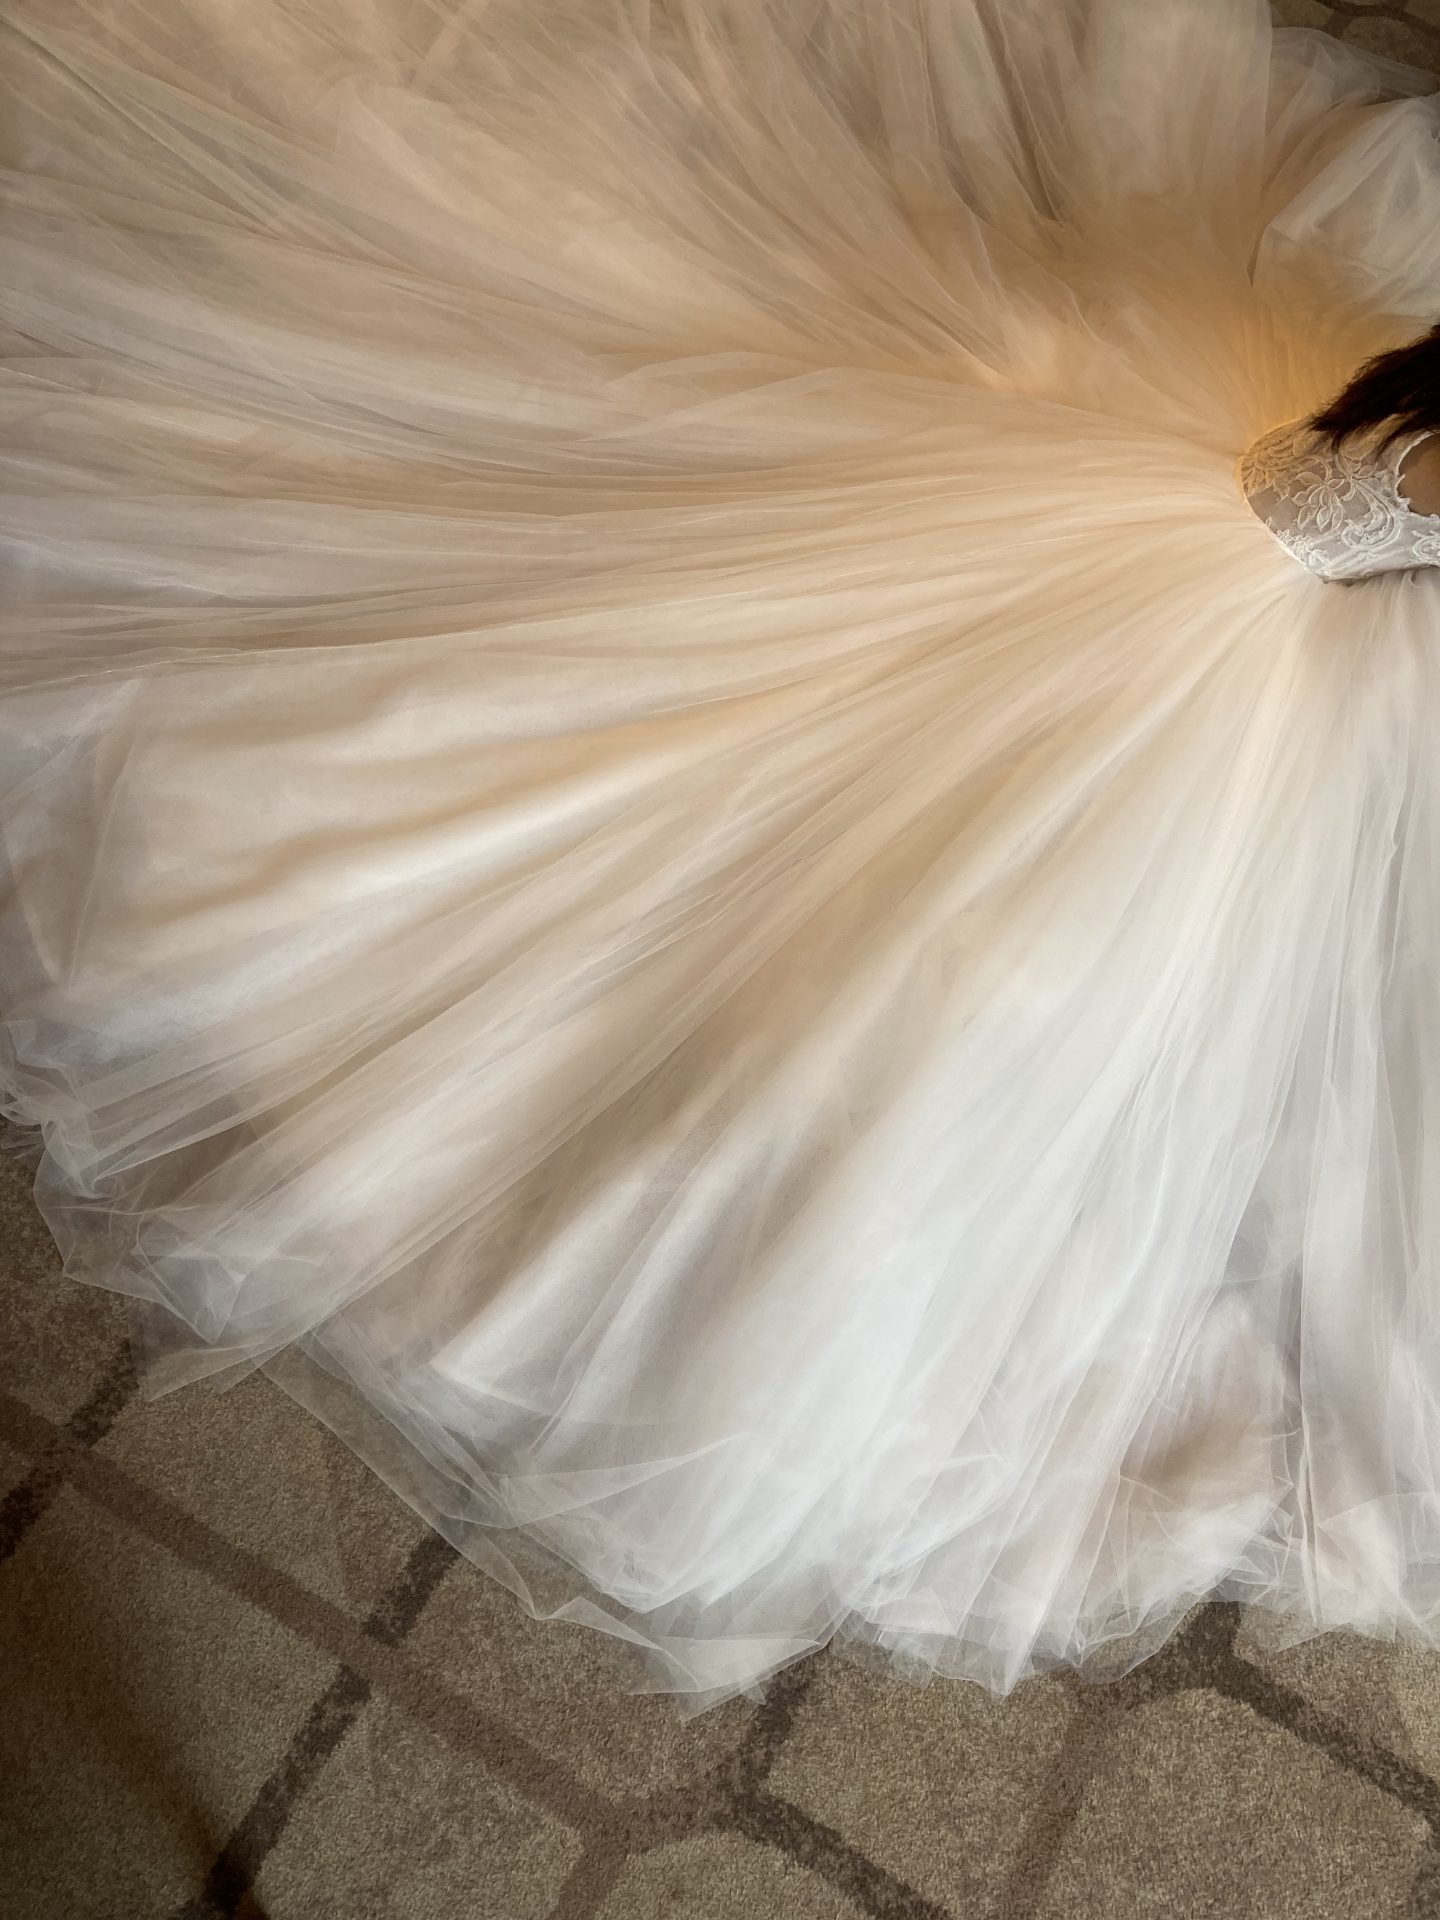 モニーク・ルイリエの、新作ウェディングドレスは前撮りに人気で、ウィズザスタイルでも大人可愛い雰囲気がぴったり